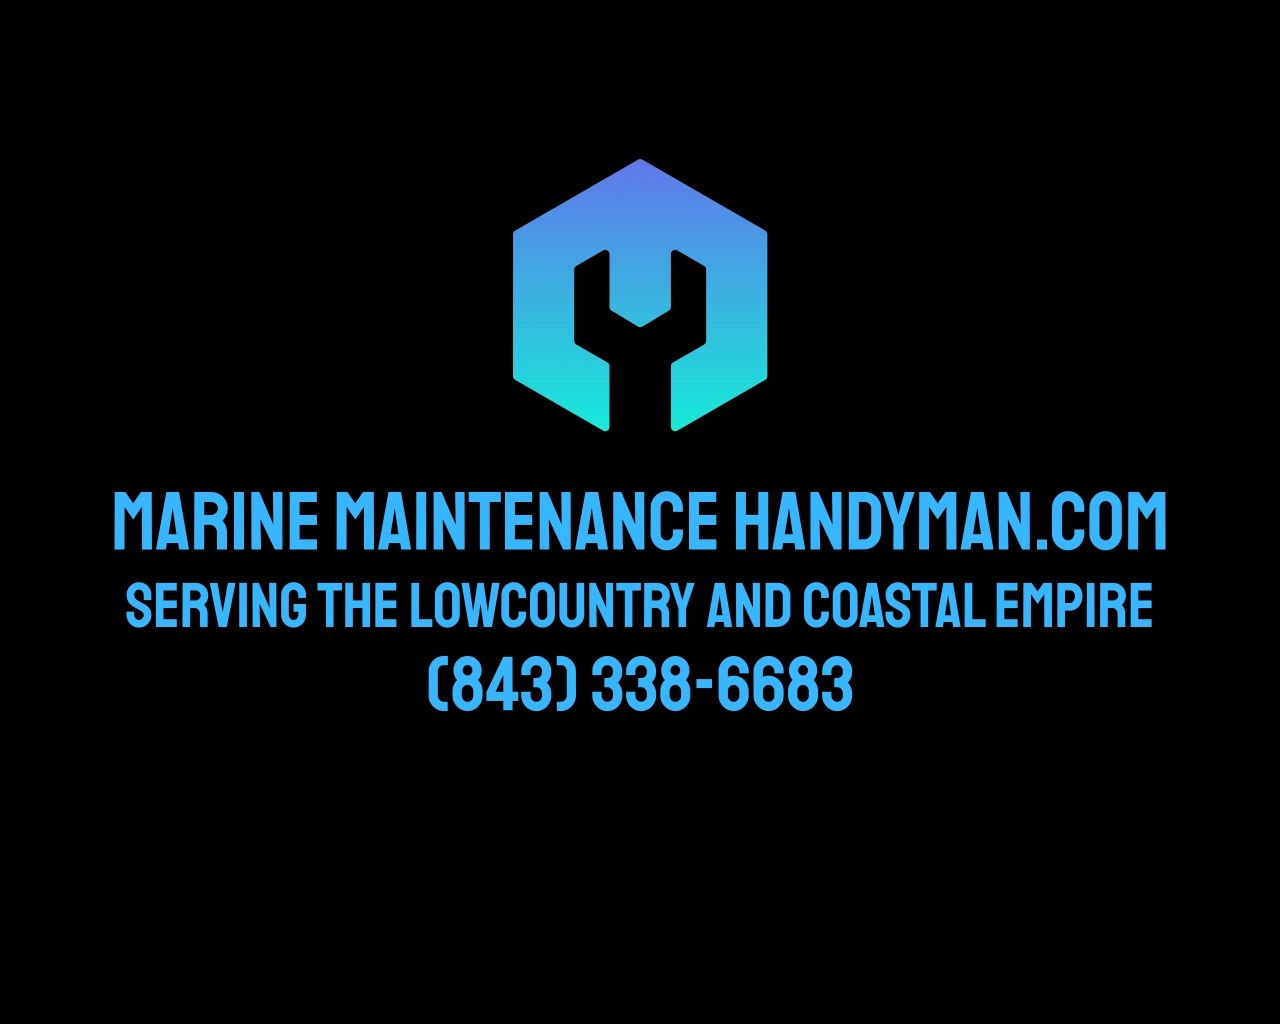 marinemaintenancehandyman.com